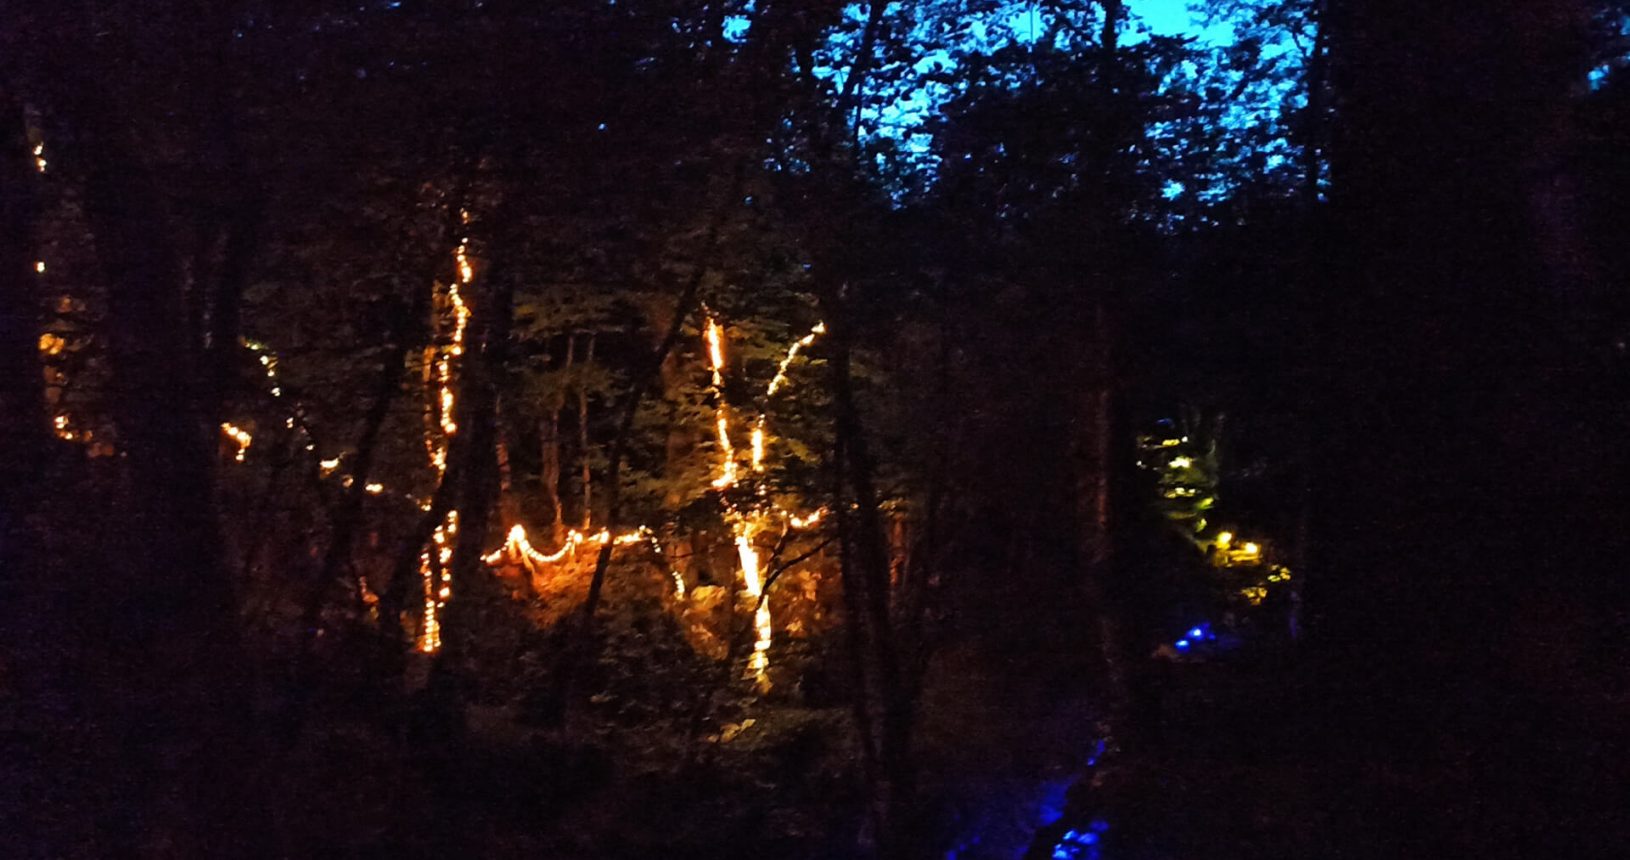 Tender lights lightland park